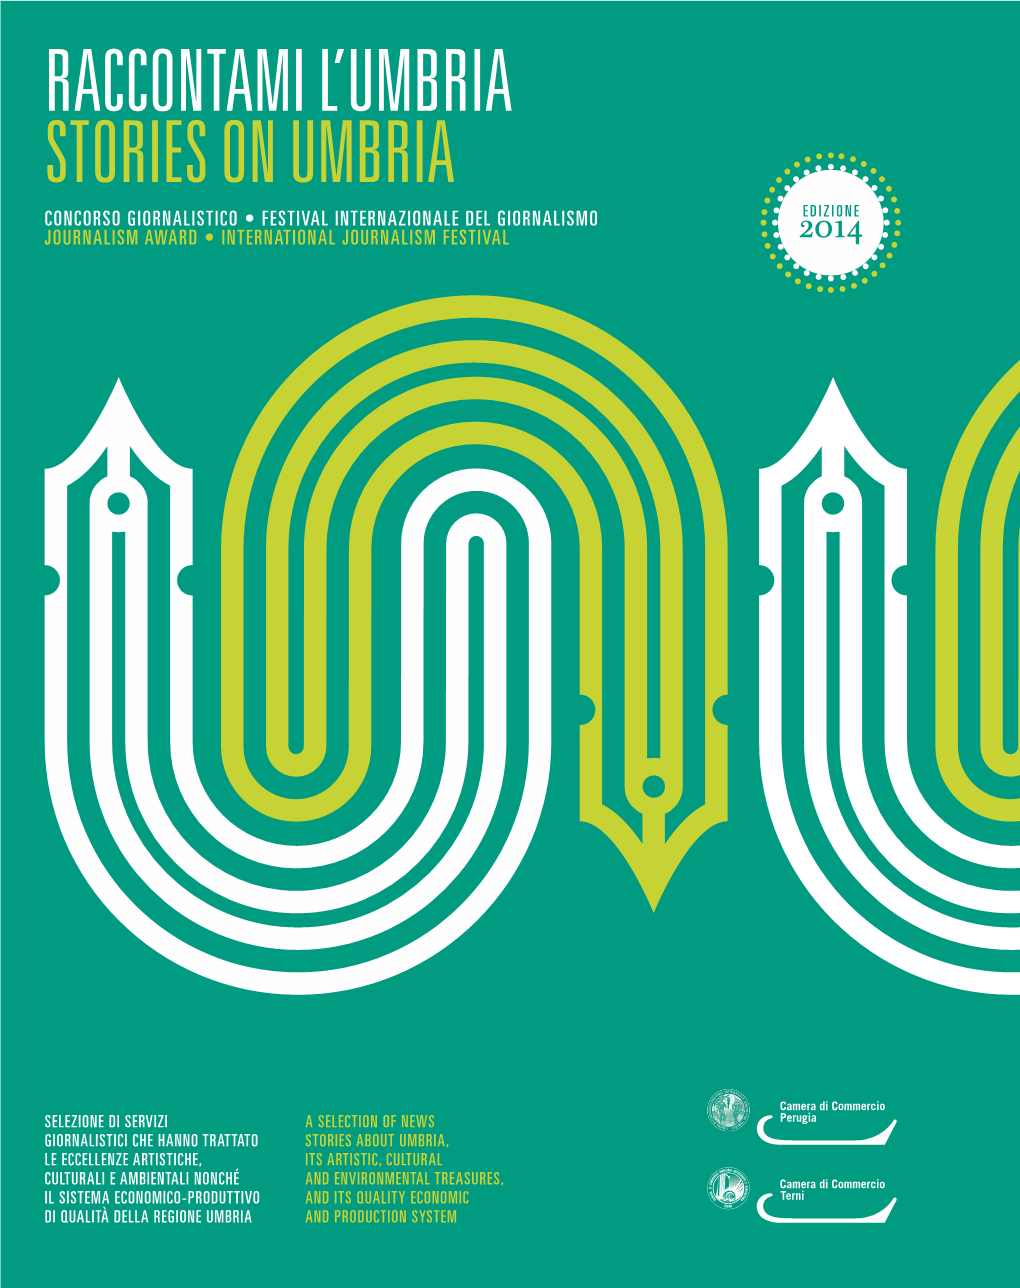 Raccontami L'umbria Stories on Umbria